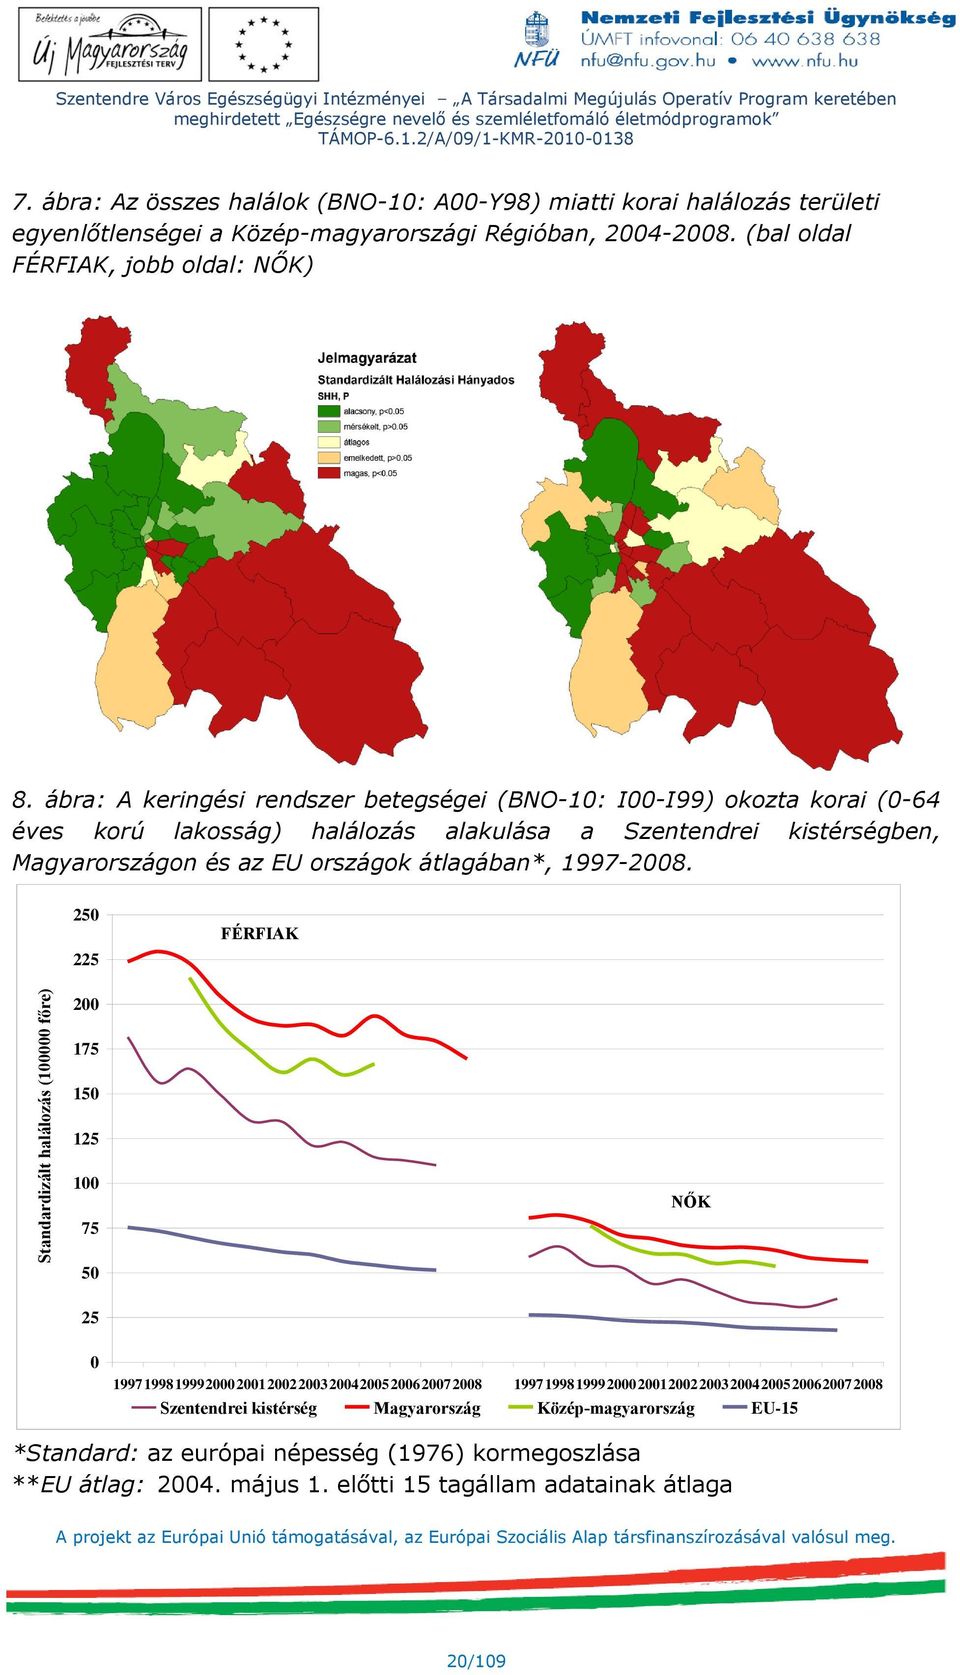 ábra: A keringési rendszer betegségei (BNO-10: I00-I99) okozta korai (0-64 éves korú lakosság) halálozás alakulása a Szentendrei kistérségben, Magyarországon és az EU országok átlagában*, 1997-2008.